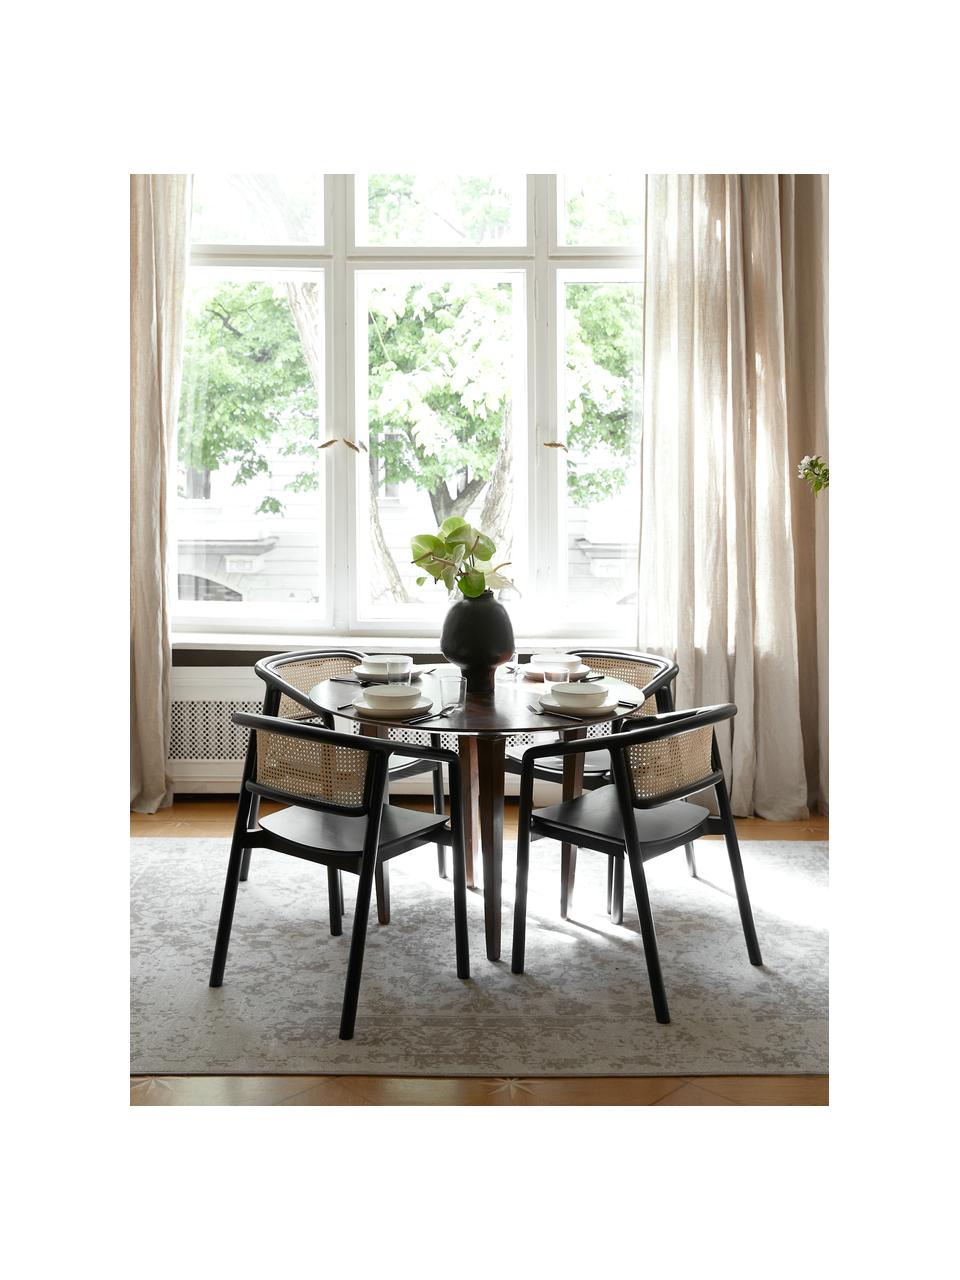 Židle s područkami a vídeňskou pleteninou Gali, Jasanové dřevo, černě lakované, ratan, Š 56 cm, H 55 cm